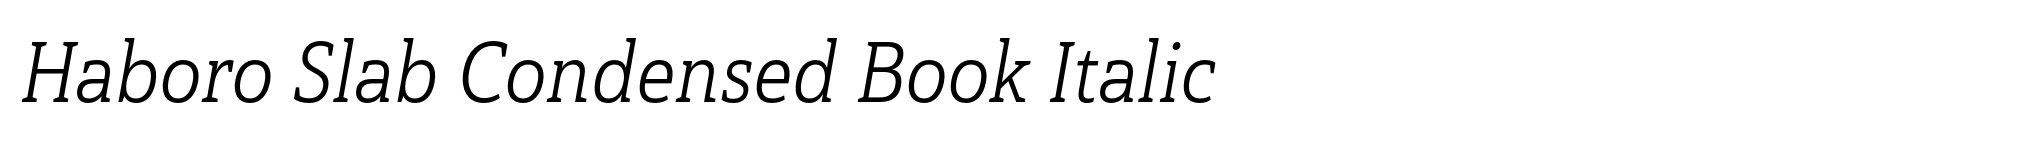 Haboro Slab Condensed Book Italic image